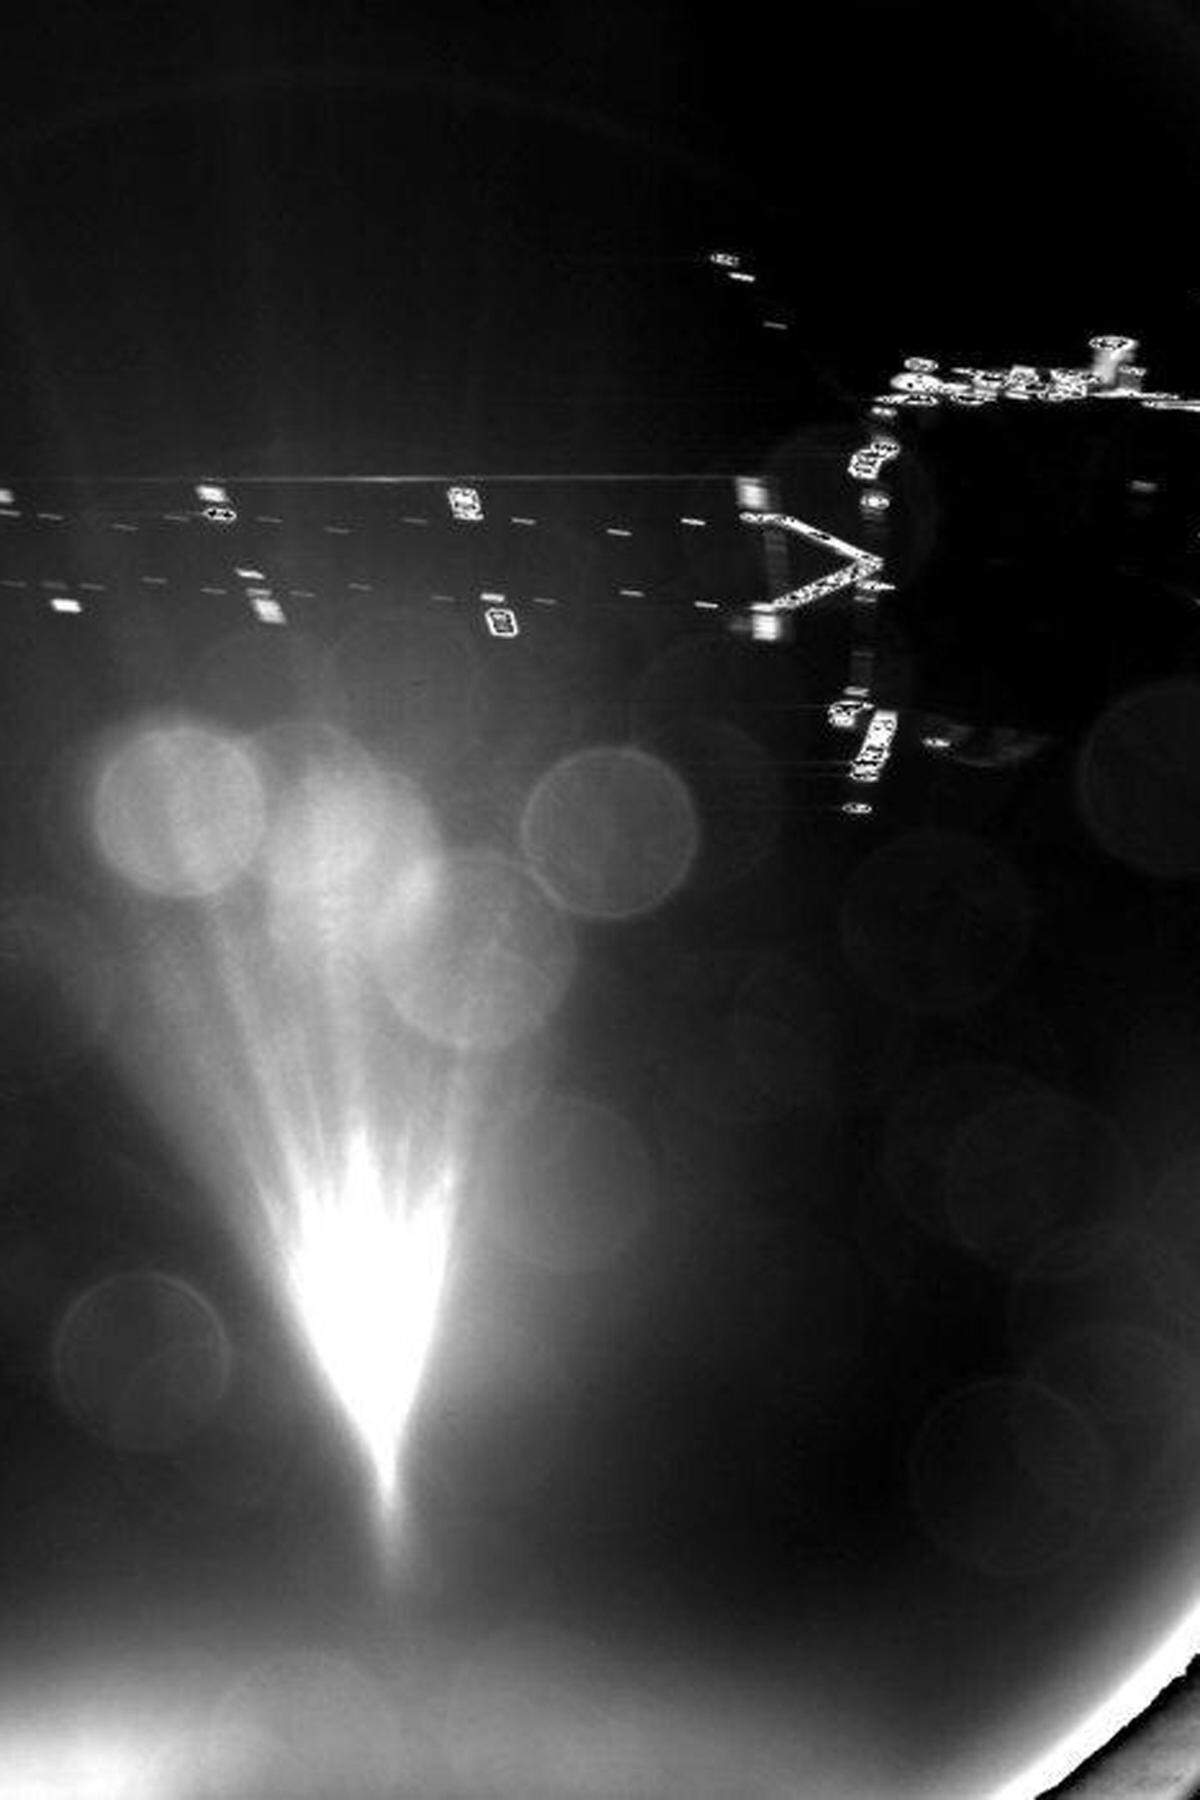 Diese Probleme waren zum Teil schon beim Abkoppeln von Philae bekannt. Im Bild: Philae fotografiert sein Mutterschiff Rosetta kurz nach der Abkopplung.